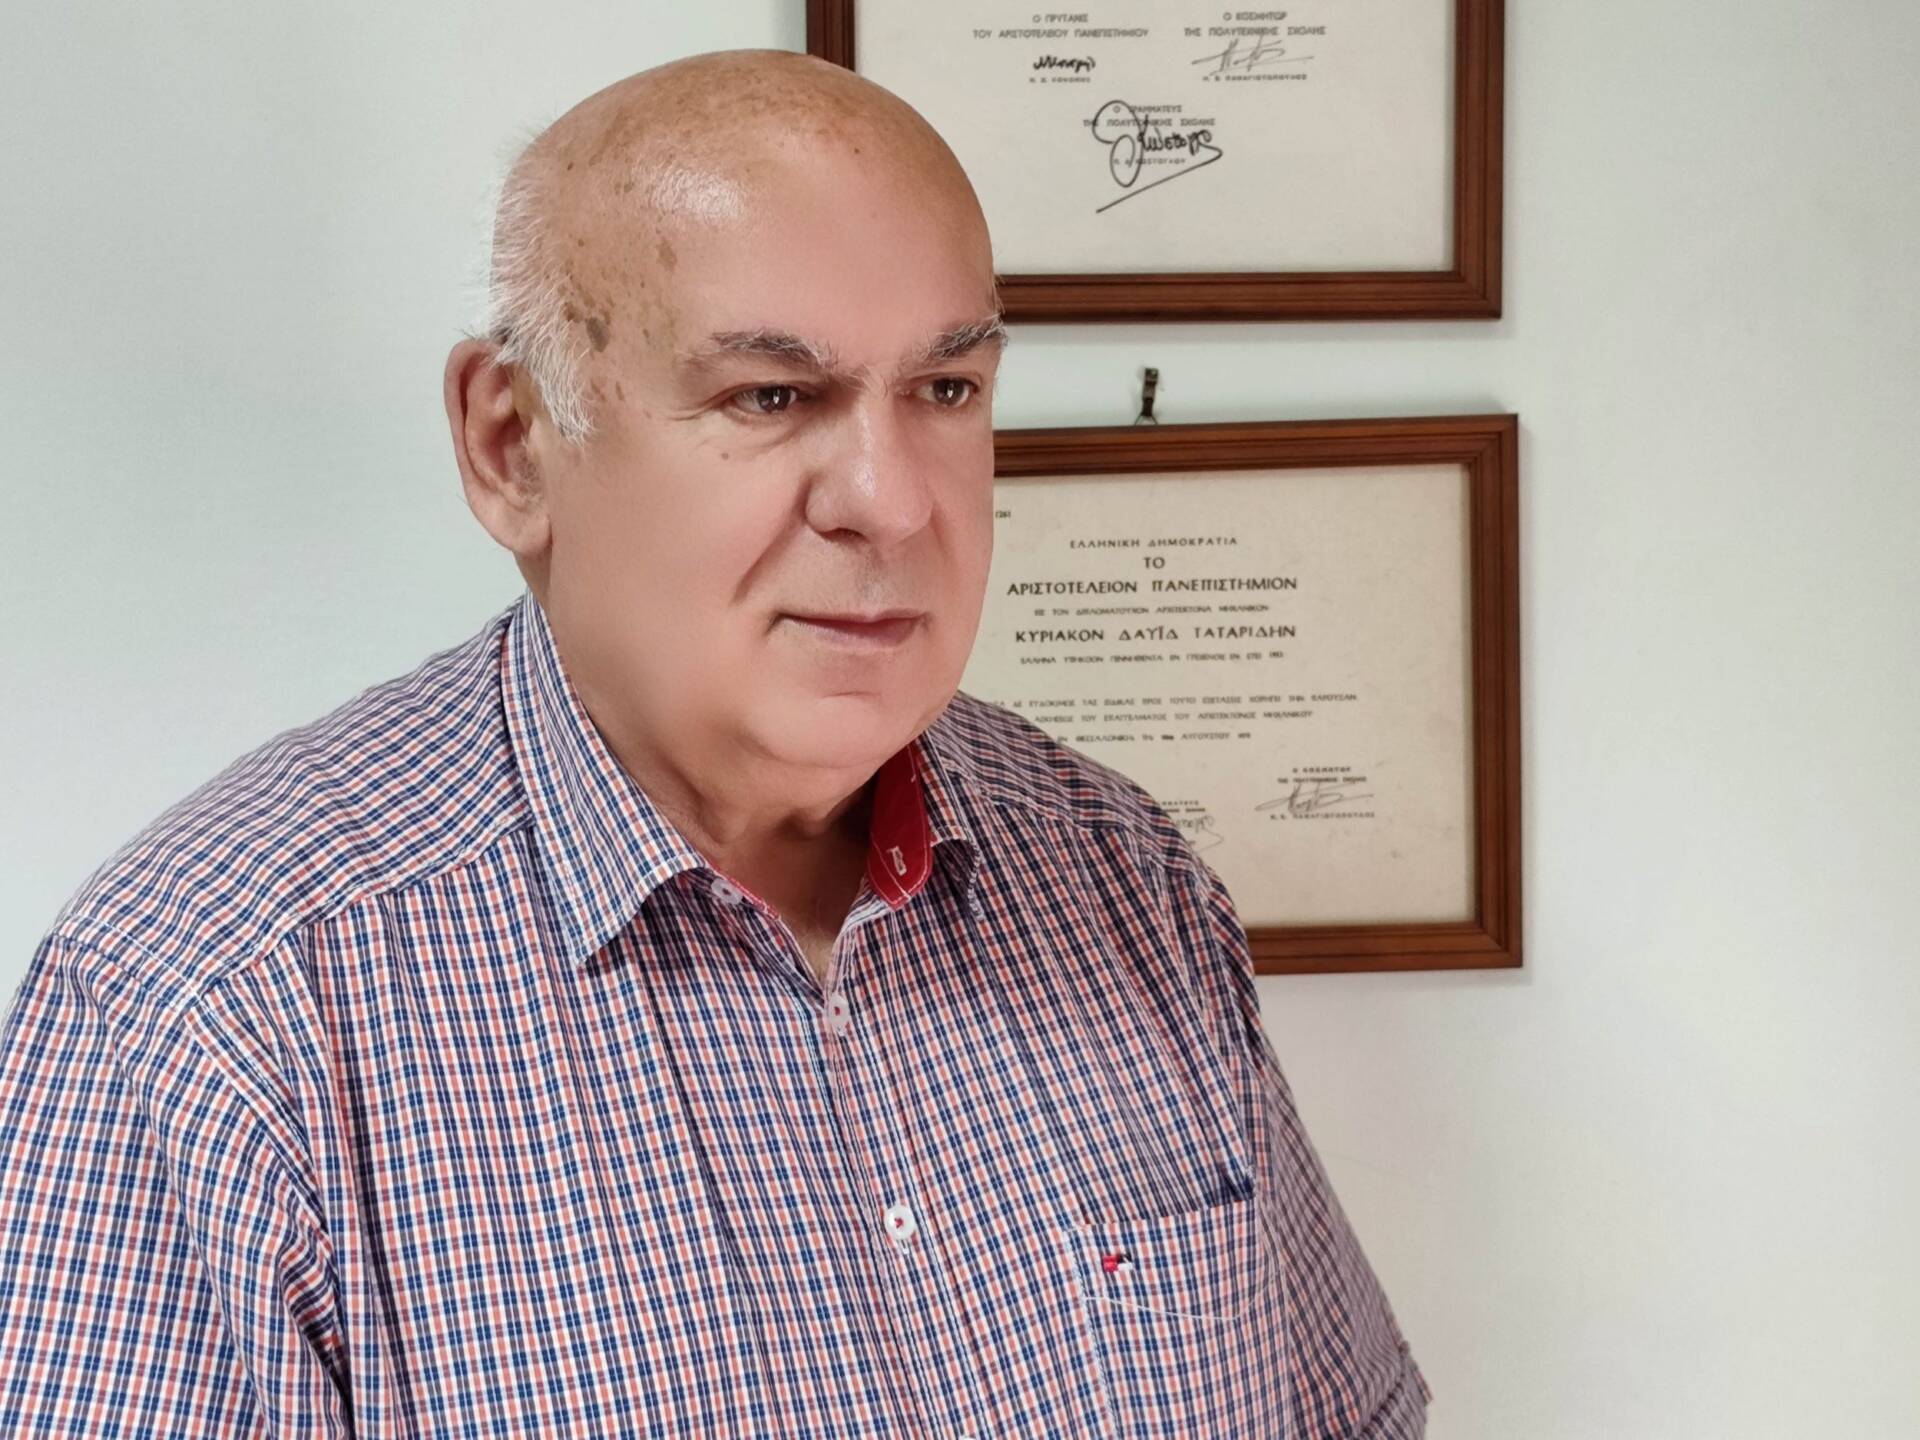 Νέος δήμαρχος Γρεβενών ο Κυριάκος Ταταρίδης, σύμφωνα με τα στοιχεία του υπουργείου Εσωτερικών